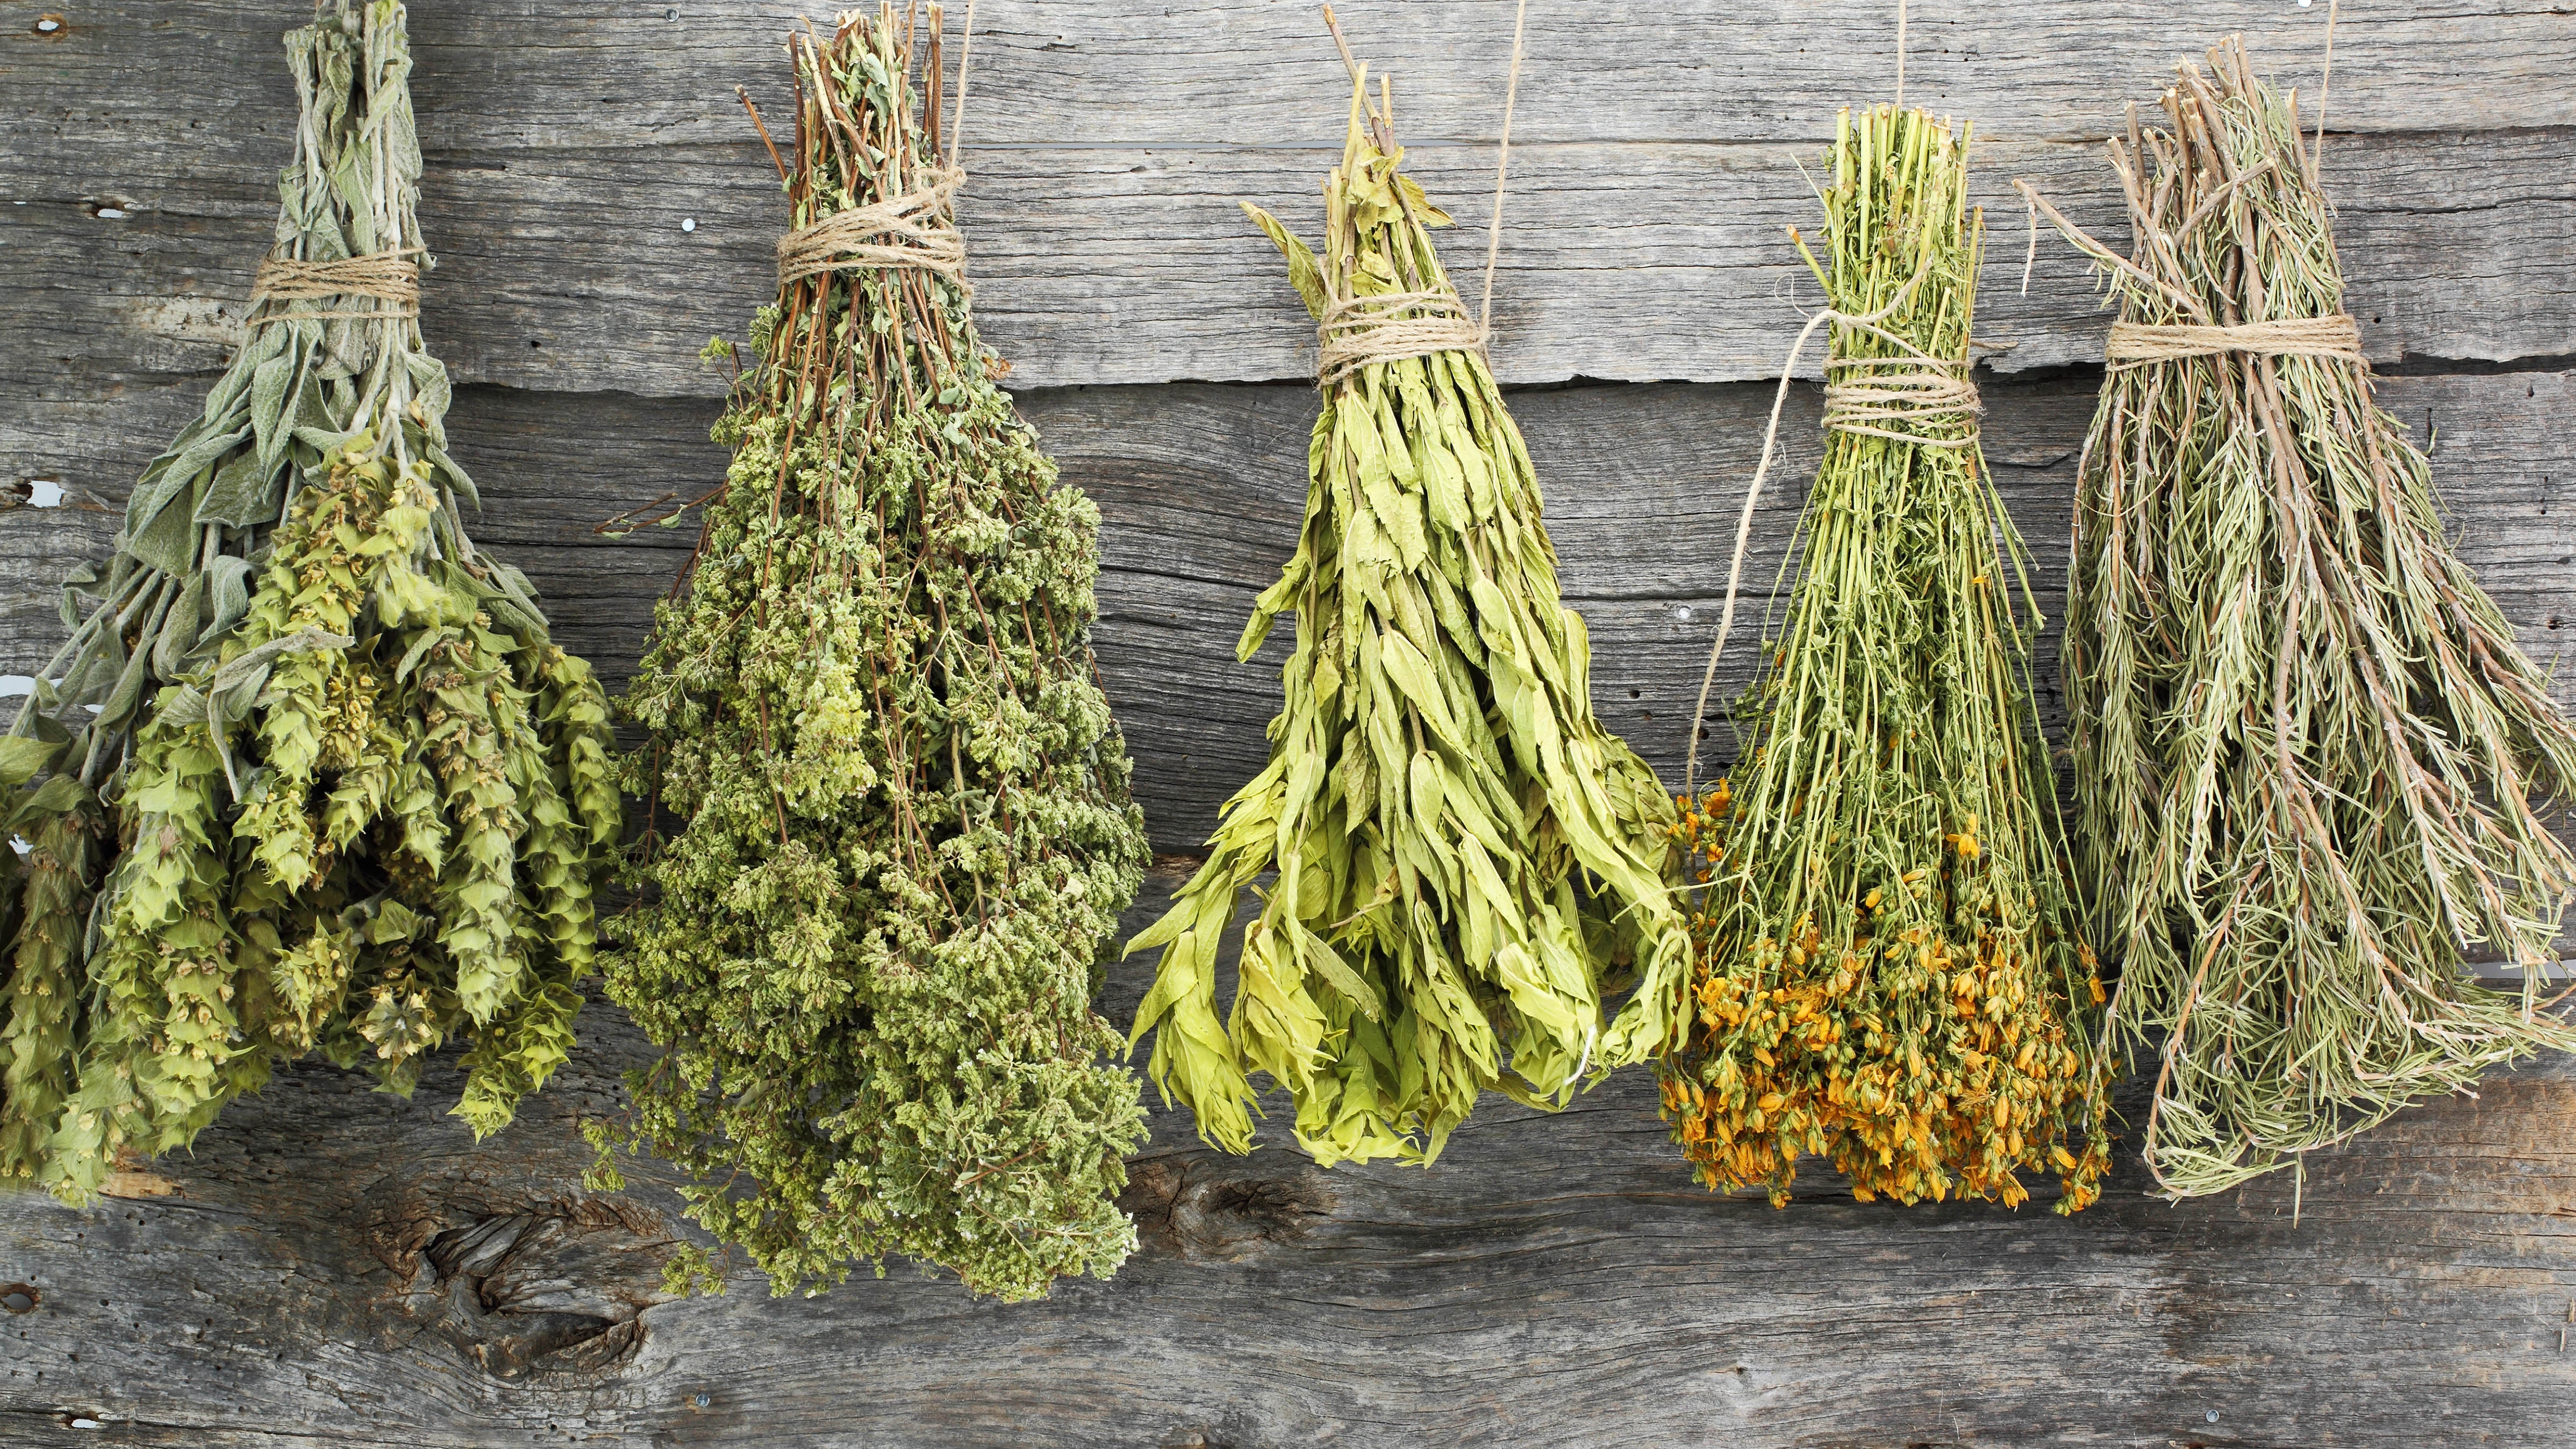 Hanging bundles of dried herbs